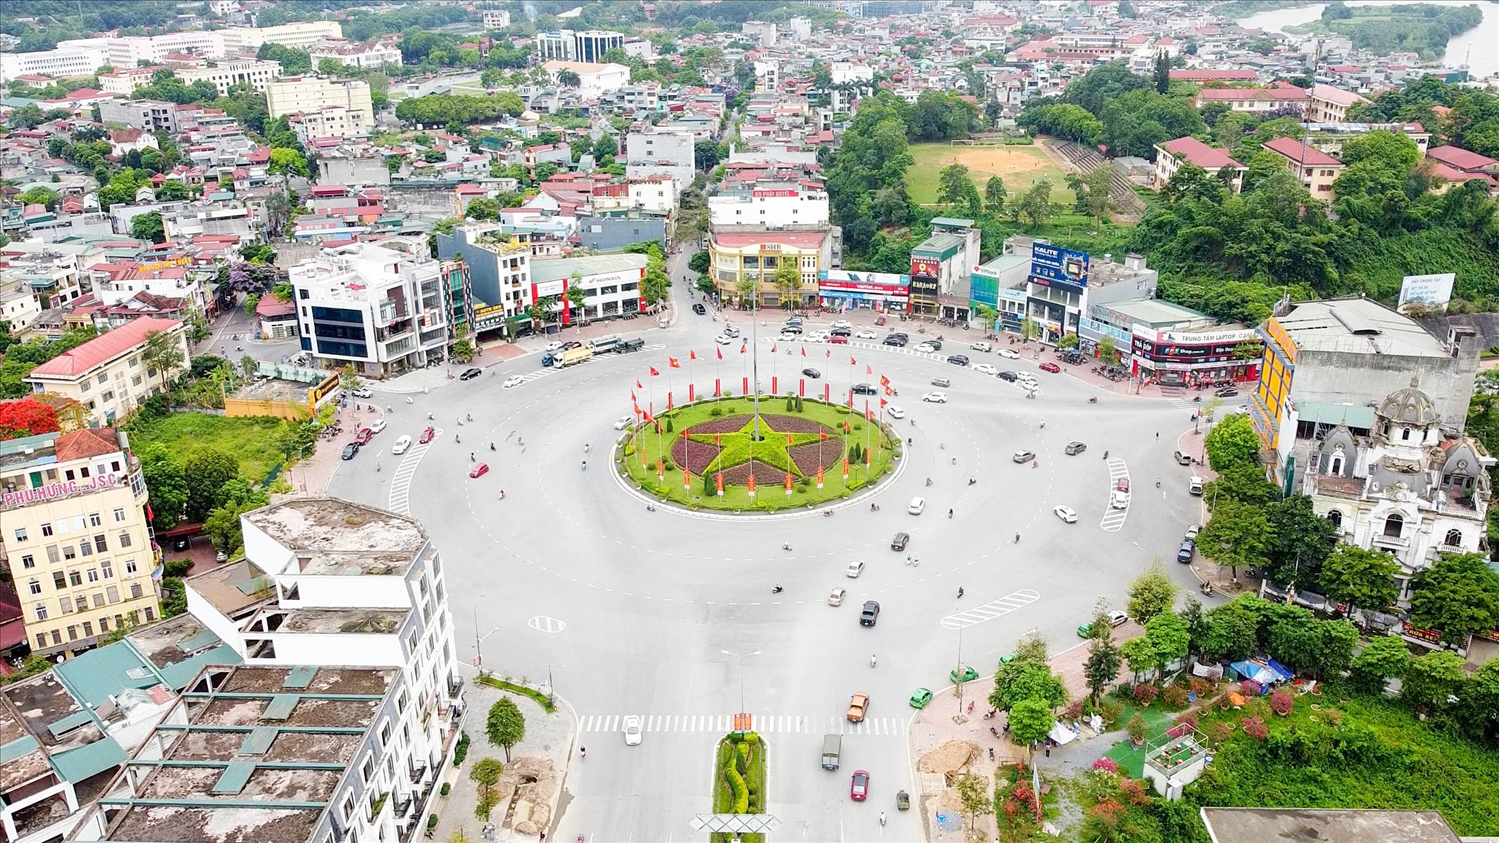 Tỉnh Lào Cai được xác định là trung tâm kinh tế vùng Trung du và miền núi Bắc Bộ